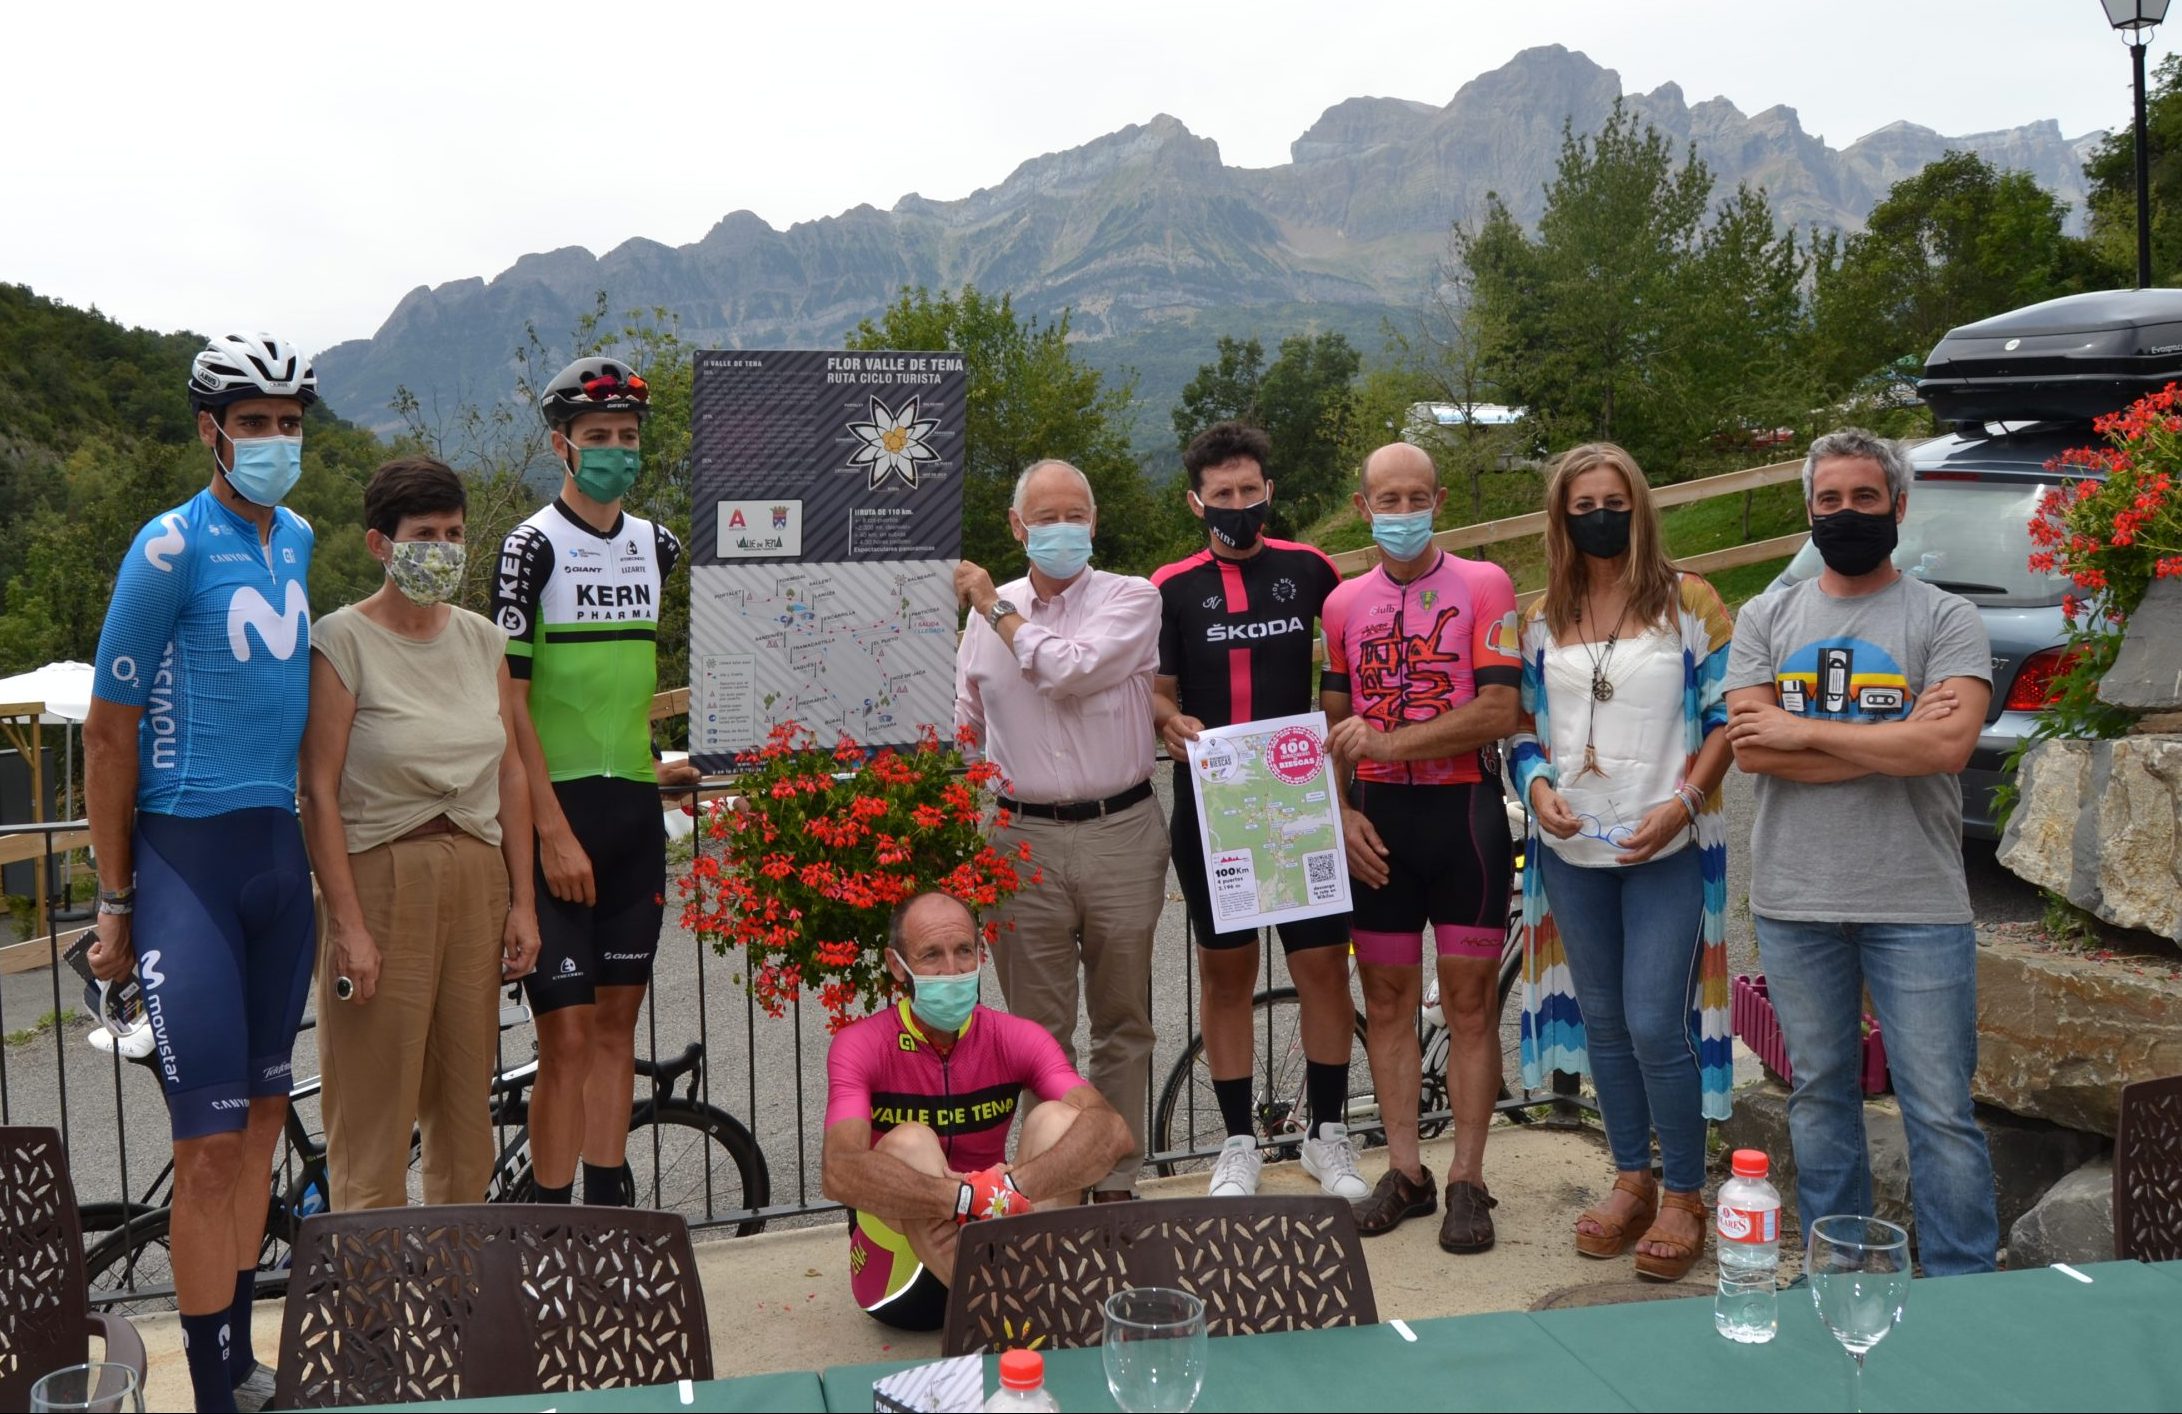 Presentación oficial de la Flor Valle de Tena después de que Arcas, Castrillo y Beloki, con el cartel de los 100 km de Biescas, y Fernando Rasal -agachado- la recorrieran. Foto: Sportaragon